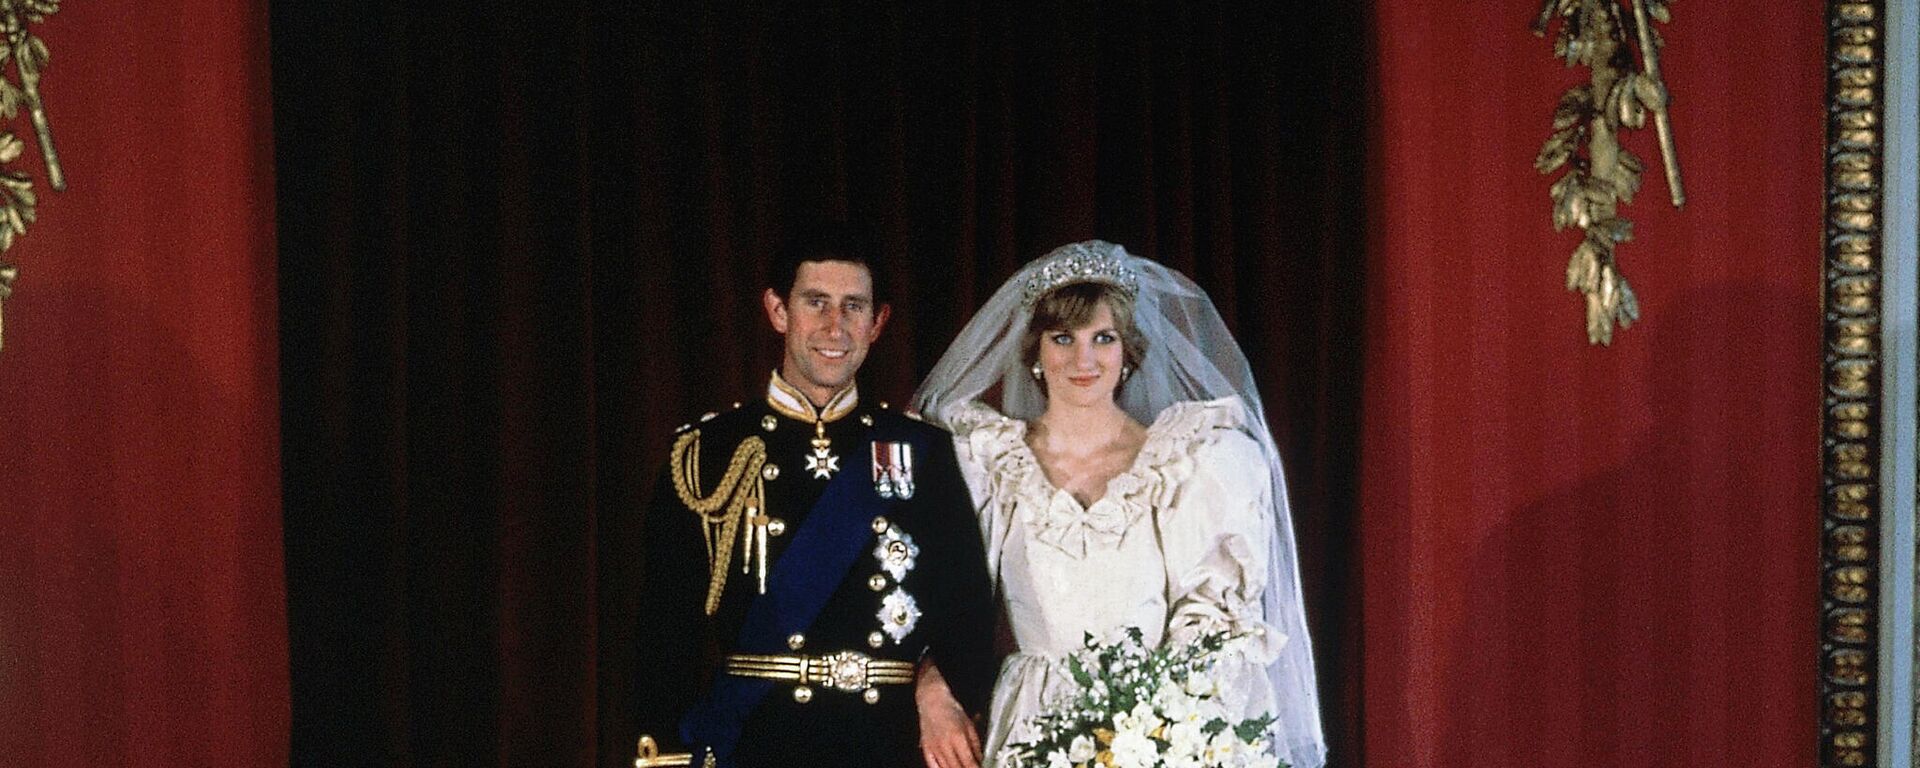 El príncipe Carlos y la princesa Diana el día de su boda - Sputnik Mundo, 1920, 08.08.2021